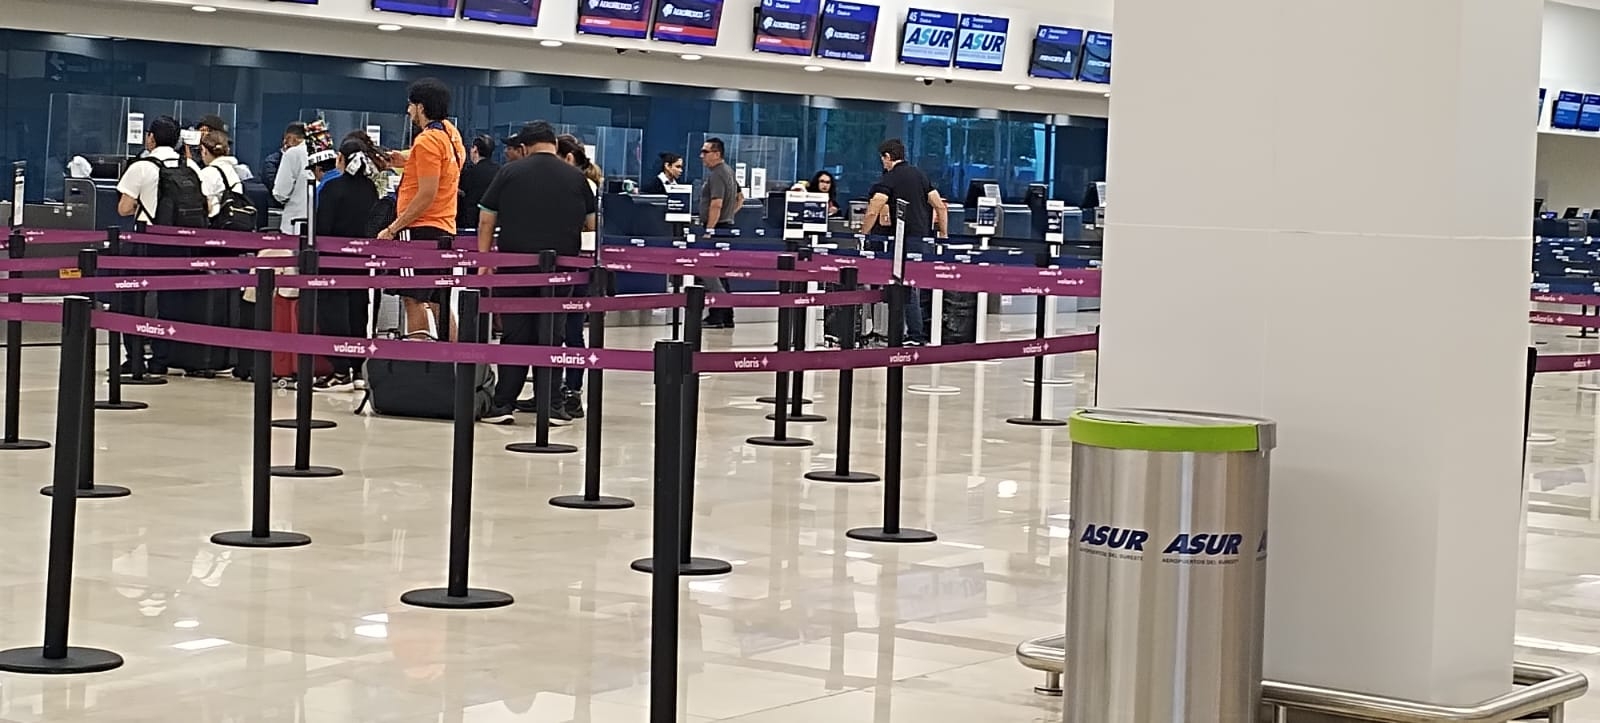 Aeropuerto de Mérida opera con siete vuelos retrasados hasta por cinco horas